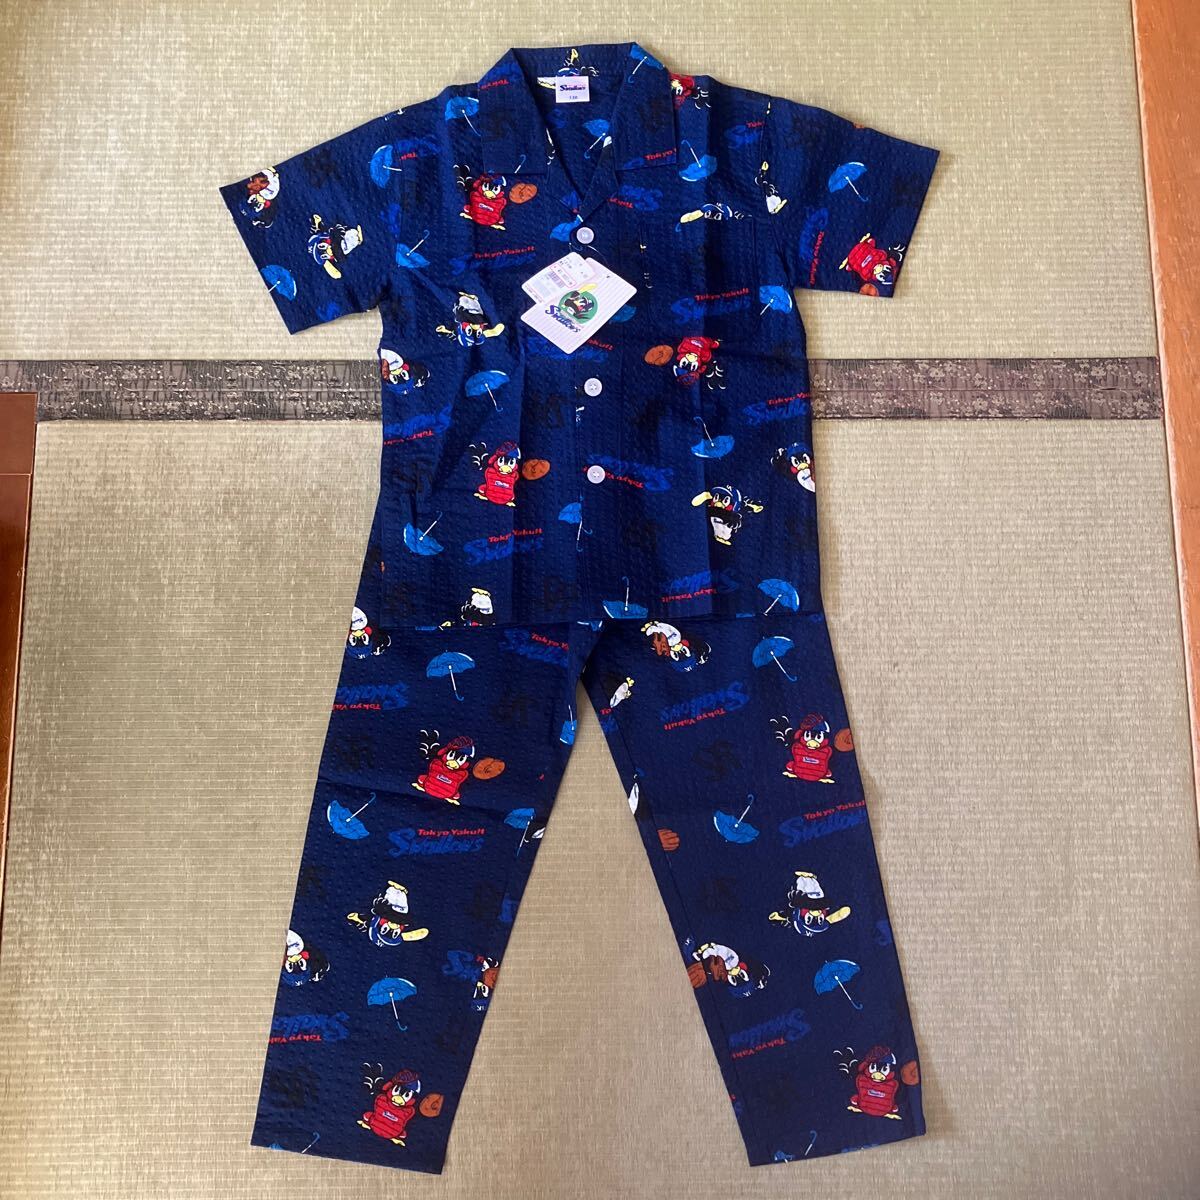  новый товар * весна ~ лето * Tokyo Yakult Swallows *.. 9 .*ys* пижама *130 размер * хлопок 100%* верх и низ в комплекте * короткий рукав * длинные брюки * отправка 230 иен ~